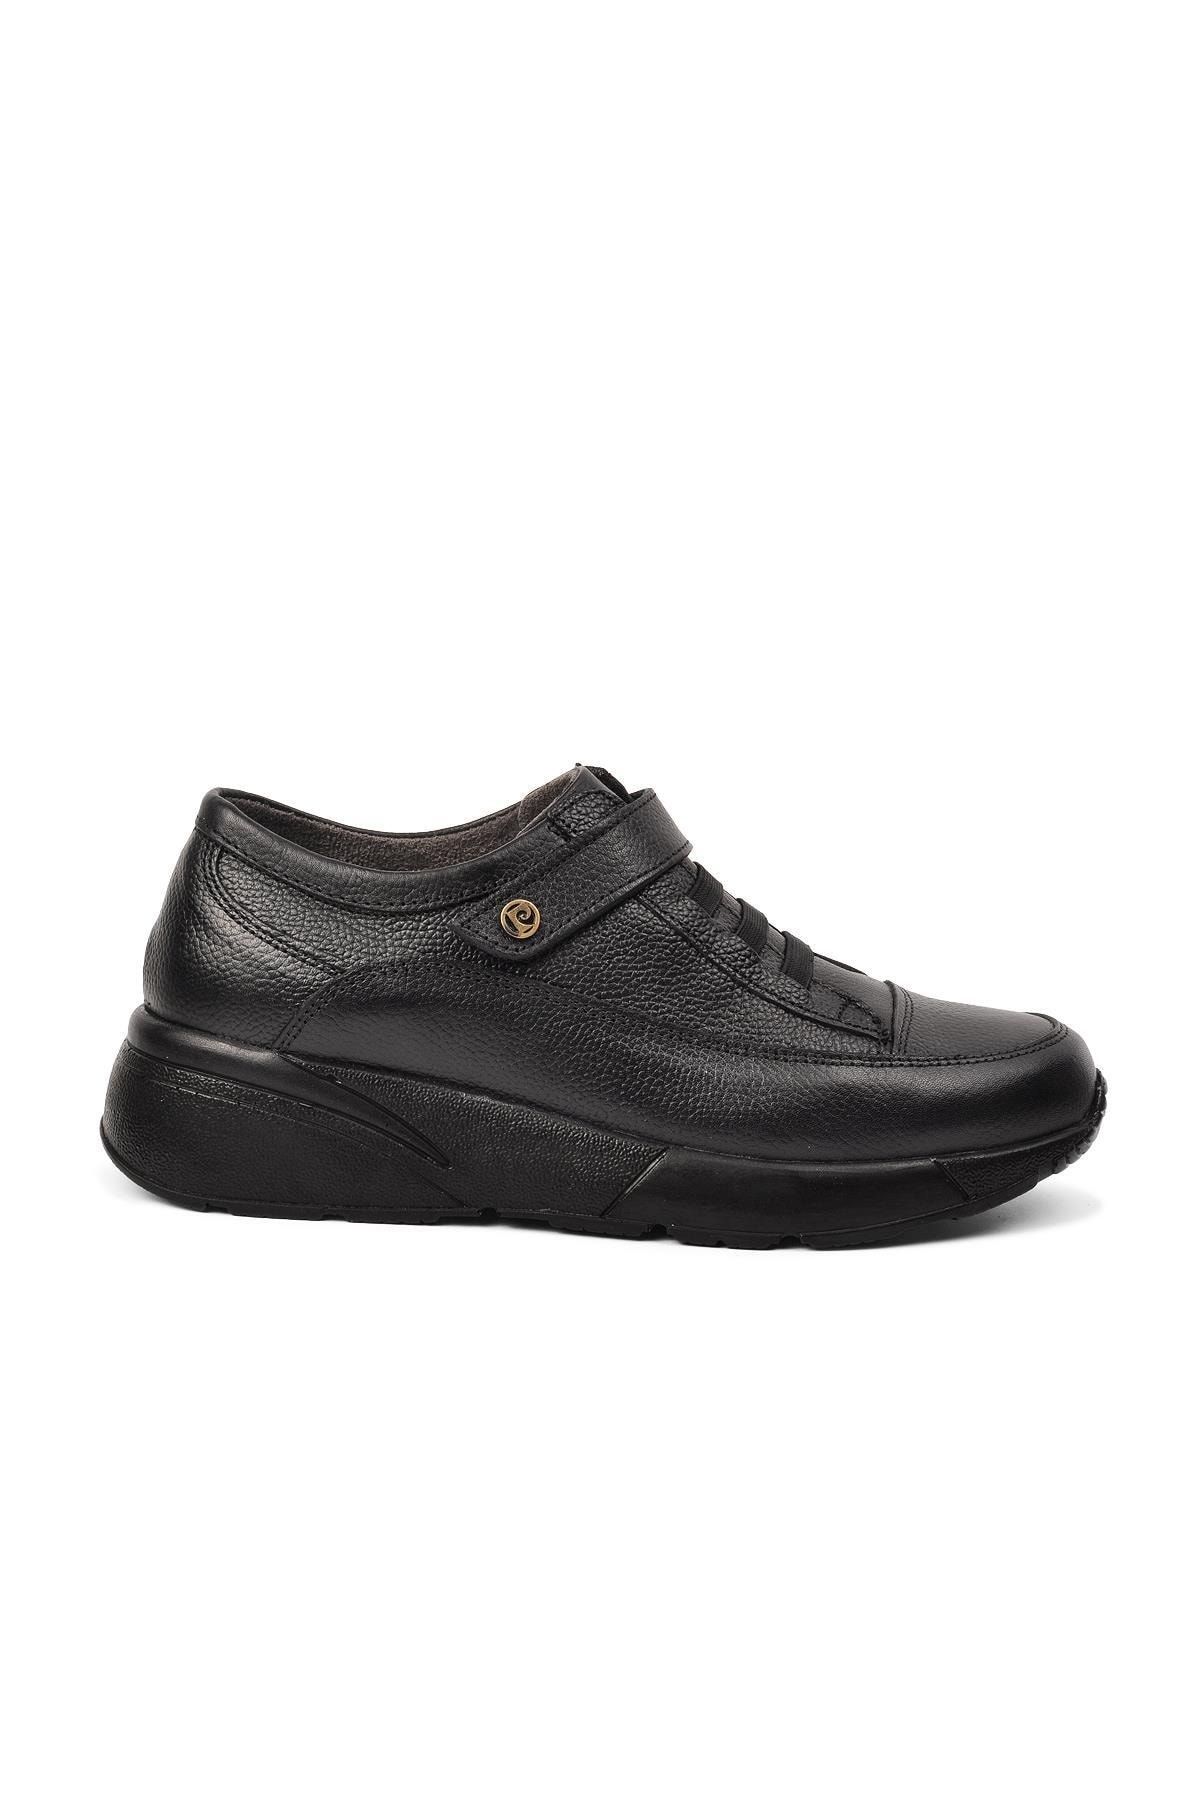 Pierre Cardin Pc-52035 Siyah Hakiki Deri Kadın Günlük Ayakkabı